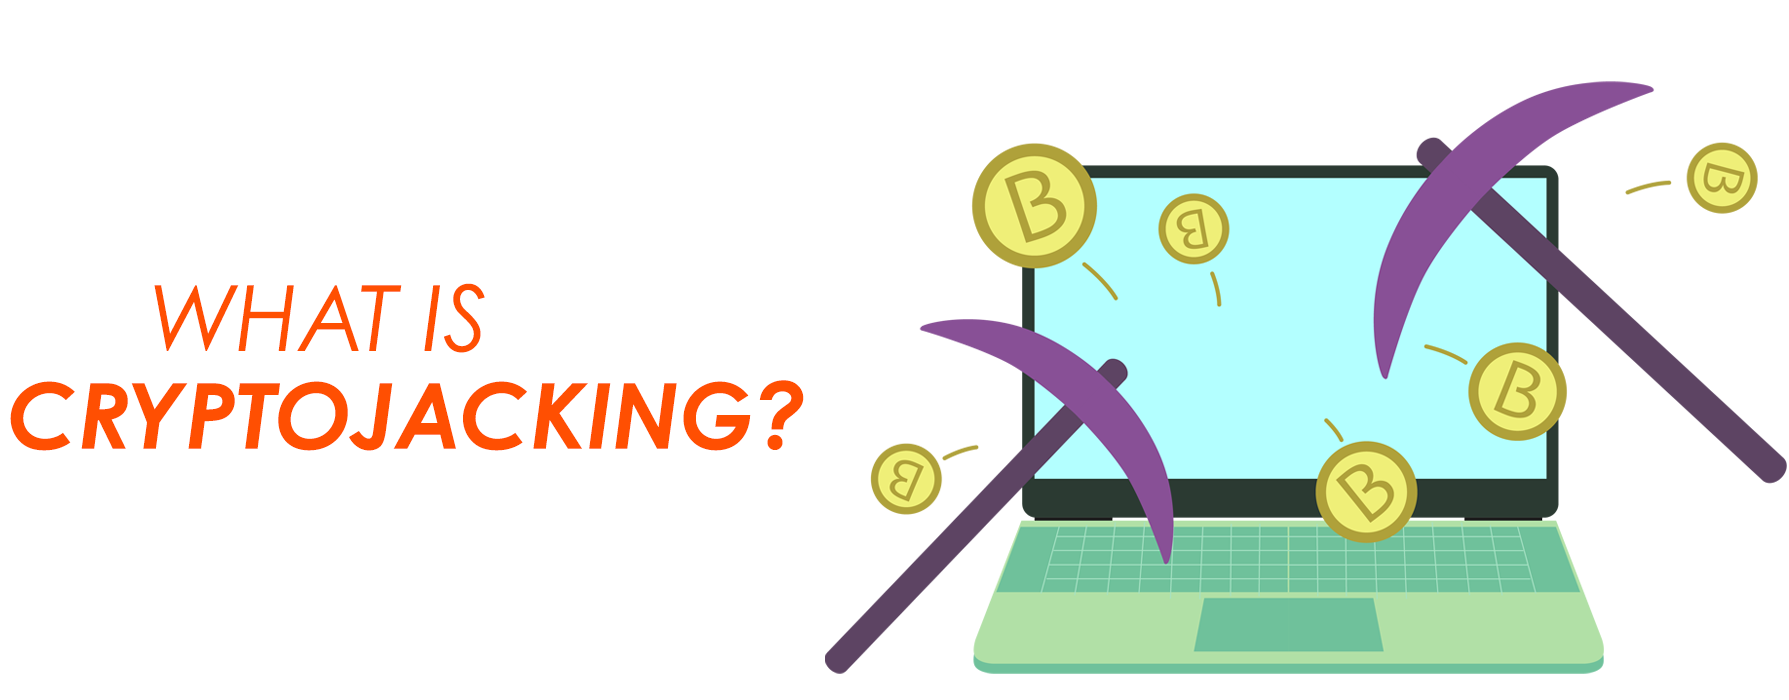 cryptojacking چیست؟